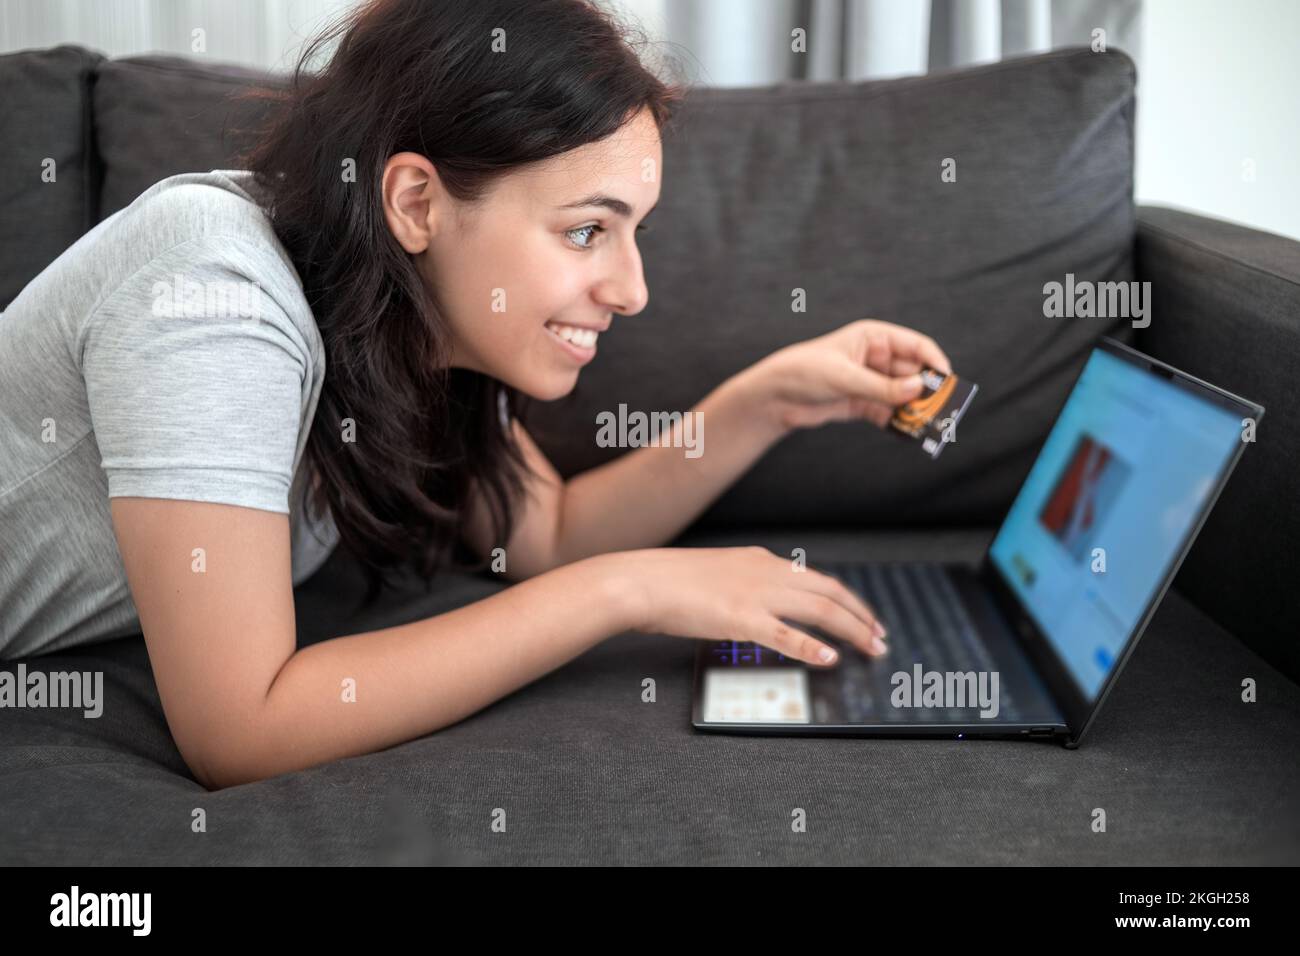 Ragazza giovane che acquista online con carta di credito sul laptop mentre sdraiata sul divano Foto Stock